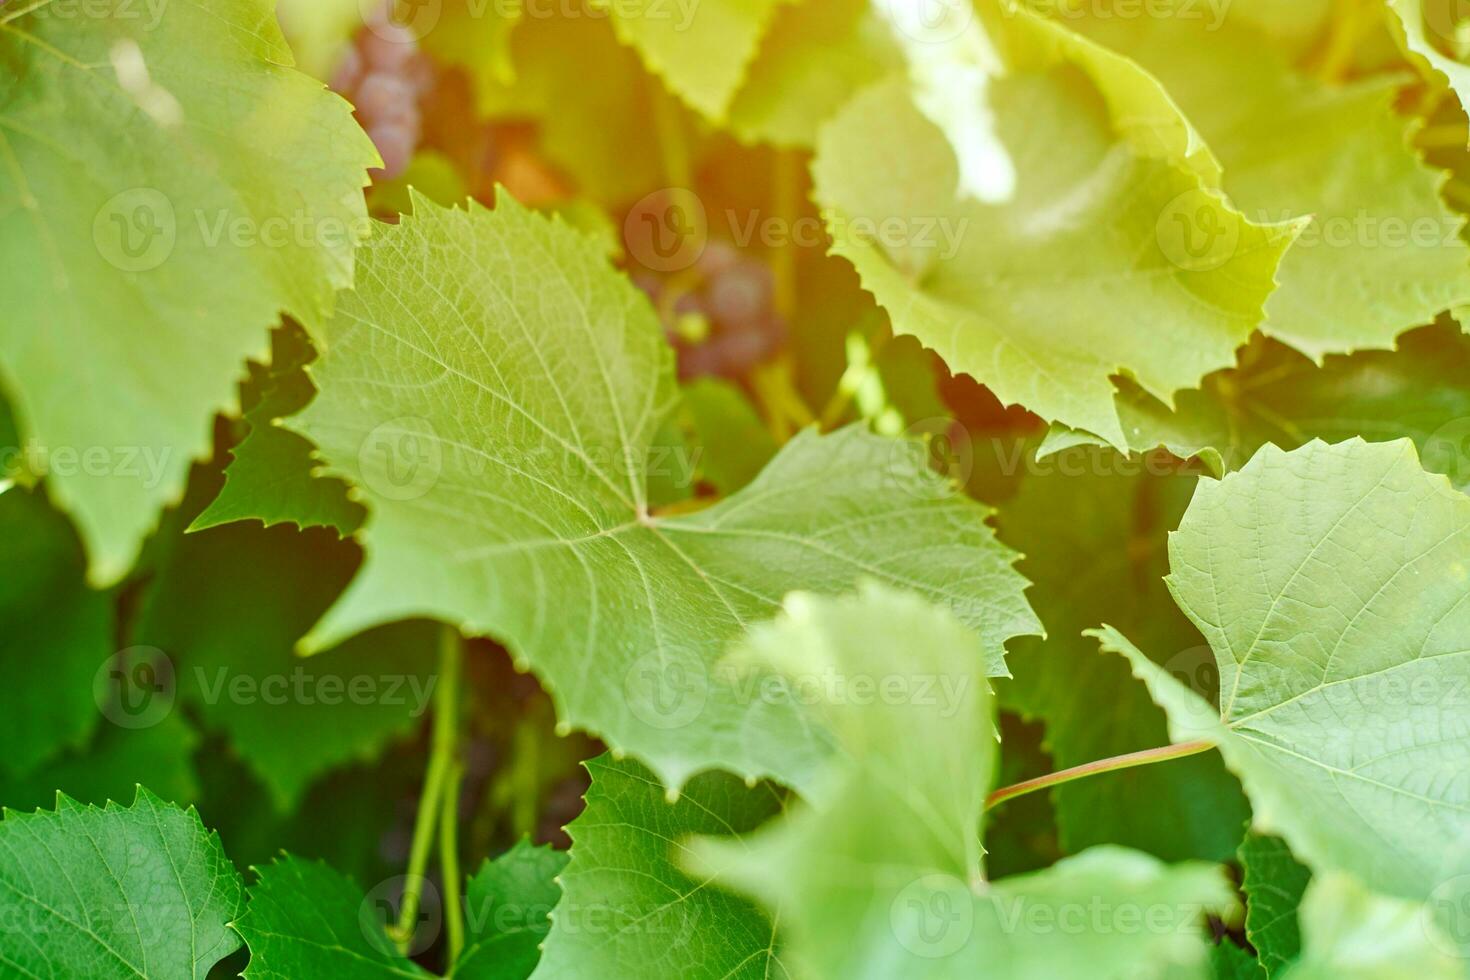 druivenbladeren in wijngaard. groene wijnbladeren op zonnige septemberdag. binnenkort herfst oogst van druiven voor het maken van wijn, jam, sap, gelei, druivenpitextract, azijn en druivenpitolie. foto